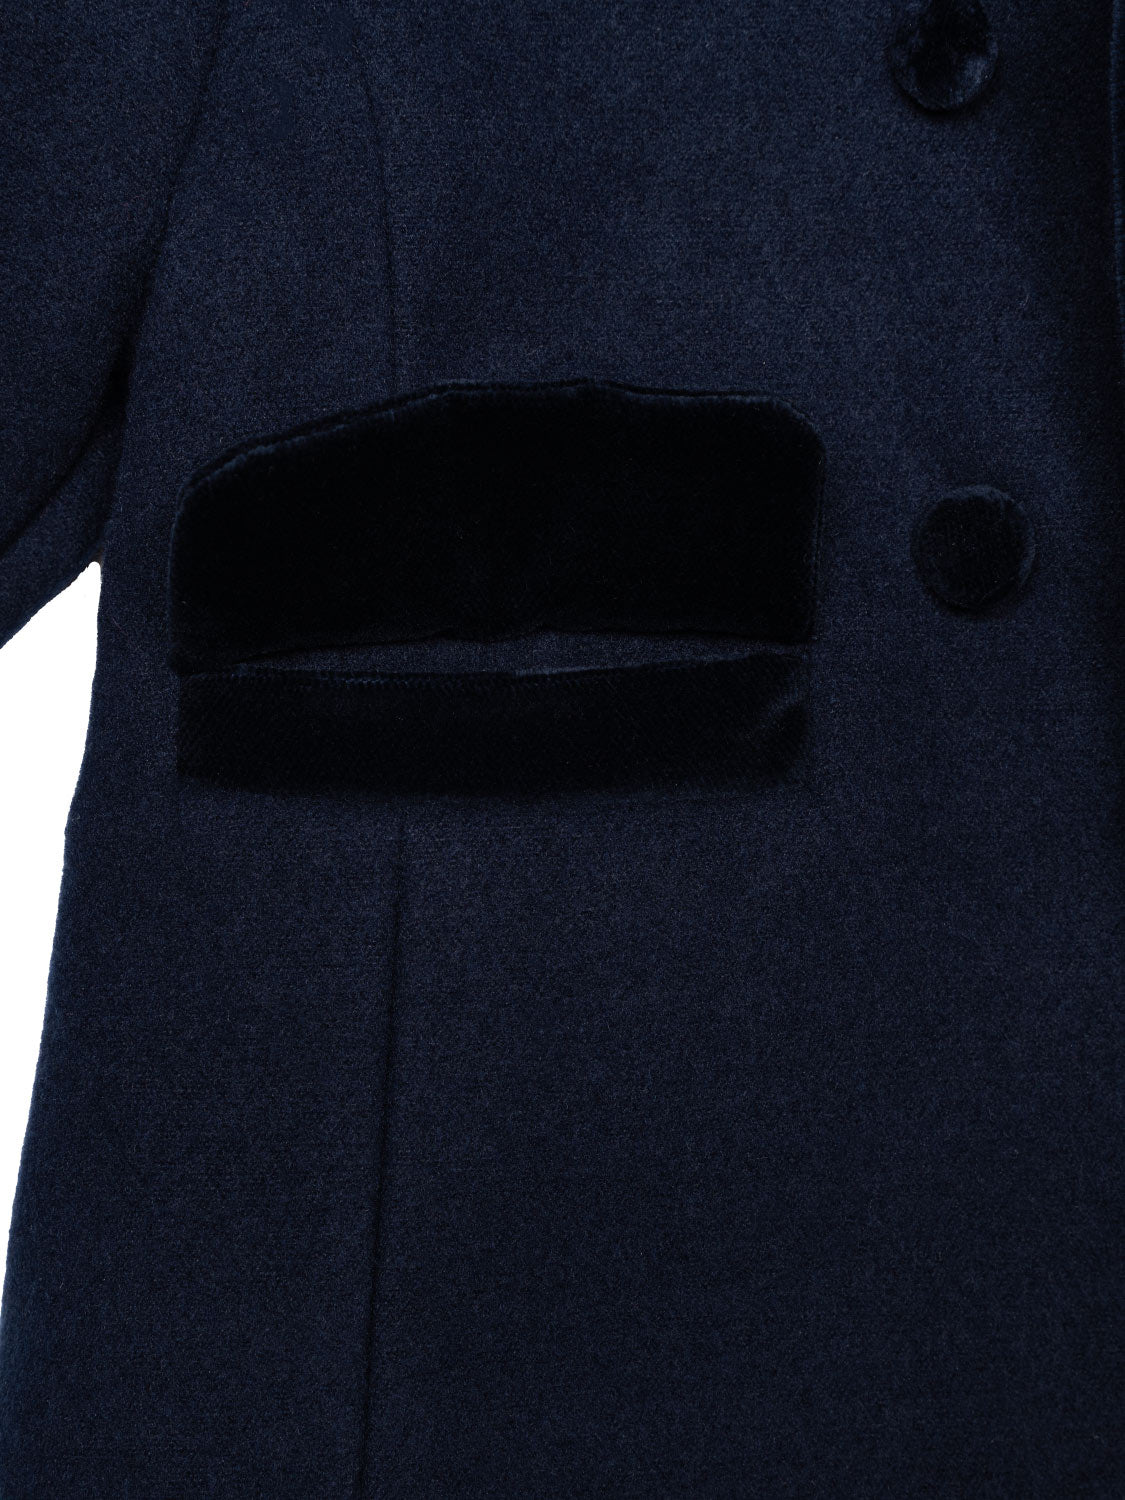 Traditioneller Mantel mit Samtknöpfen - Marine